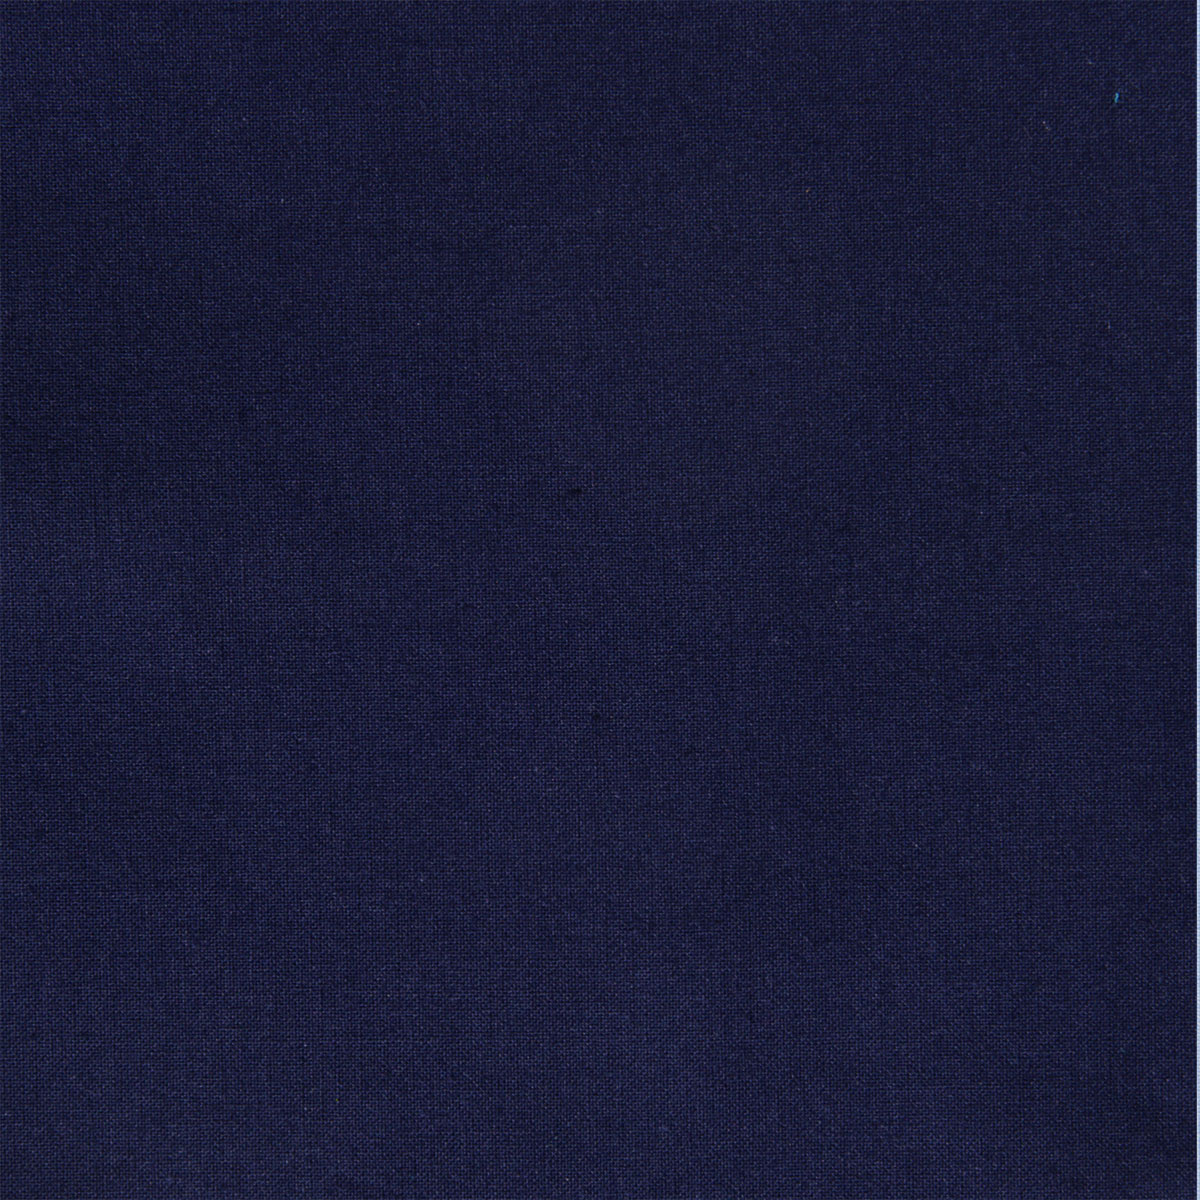 Dekostoff Freiberg dunkelblau in 1,6m Breite (METERWARE) Baumwollstoff Stoff aus 100% Baumwolle